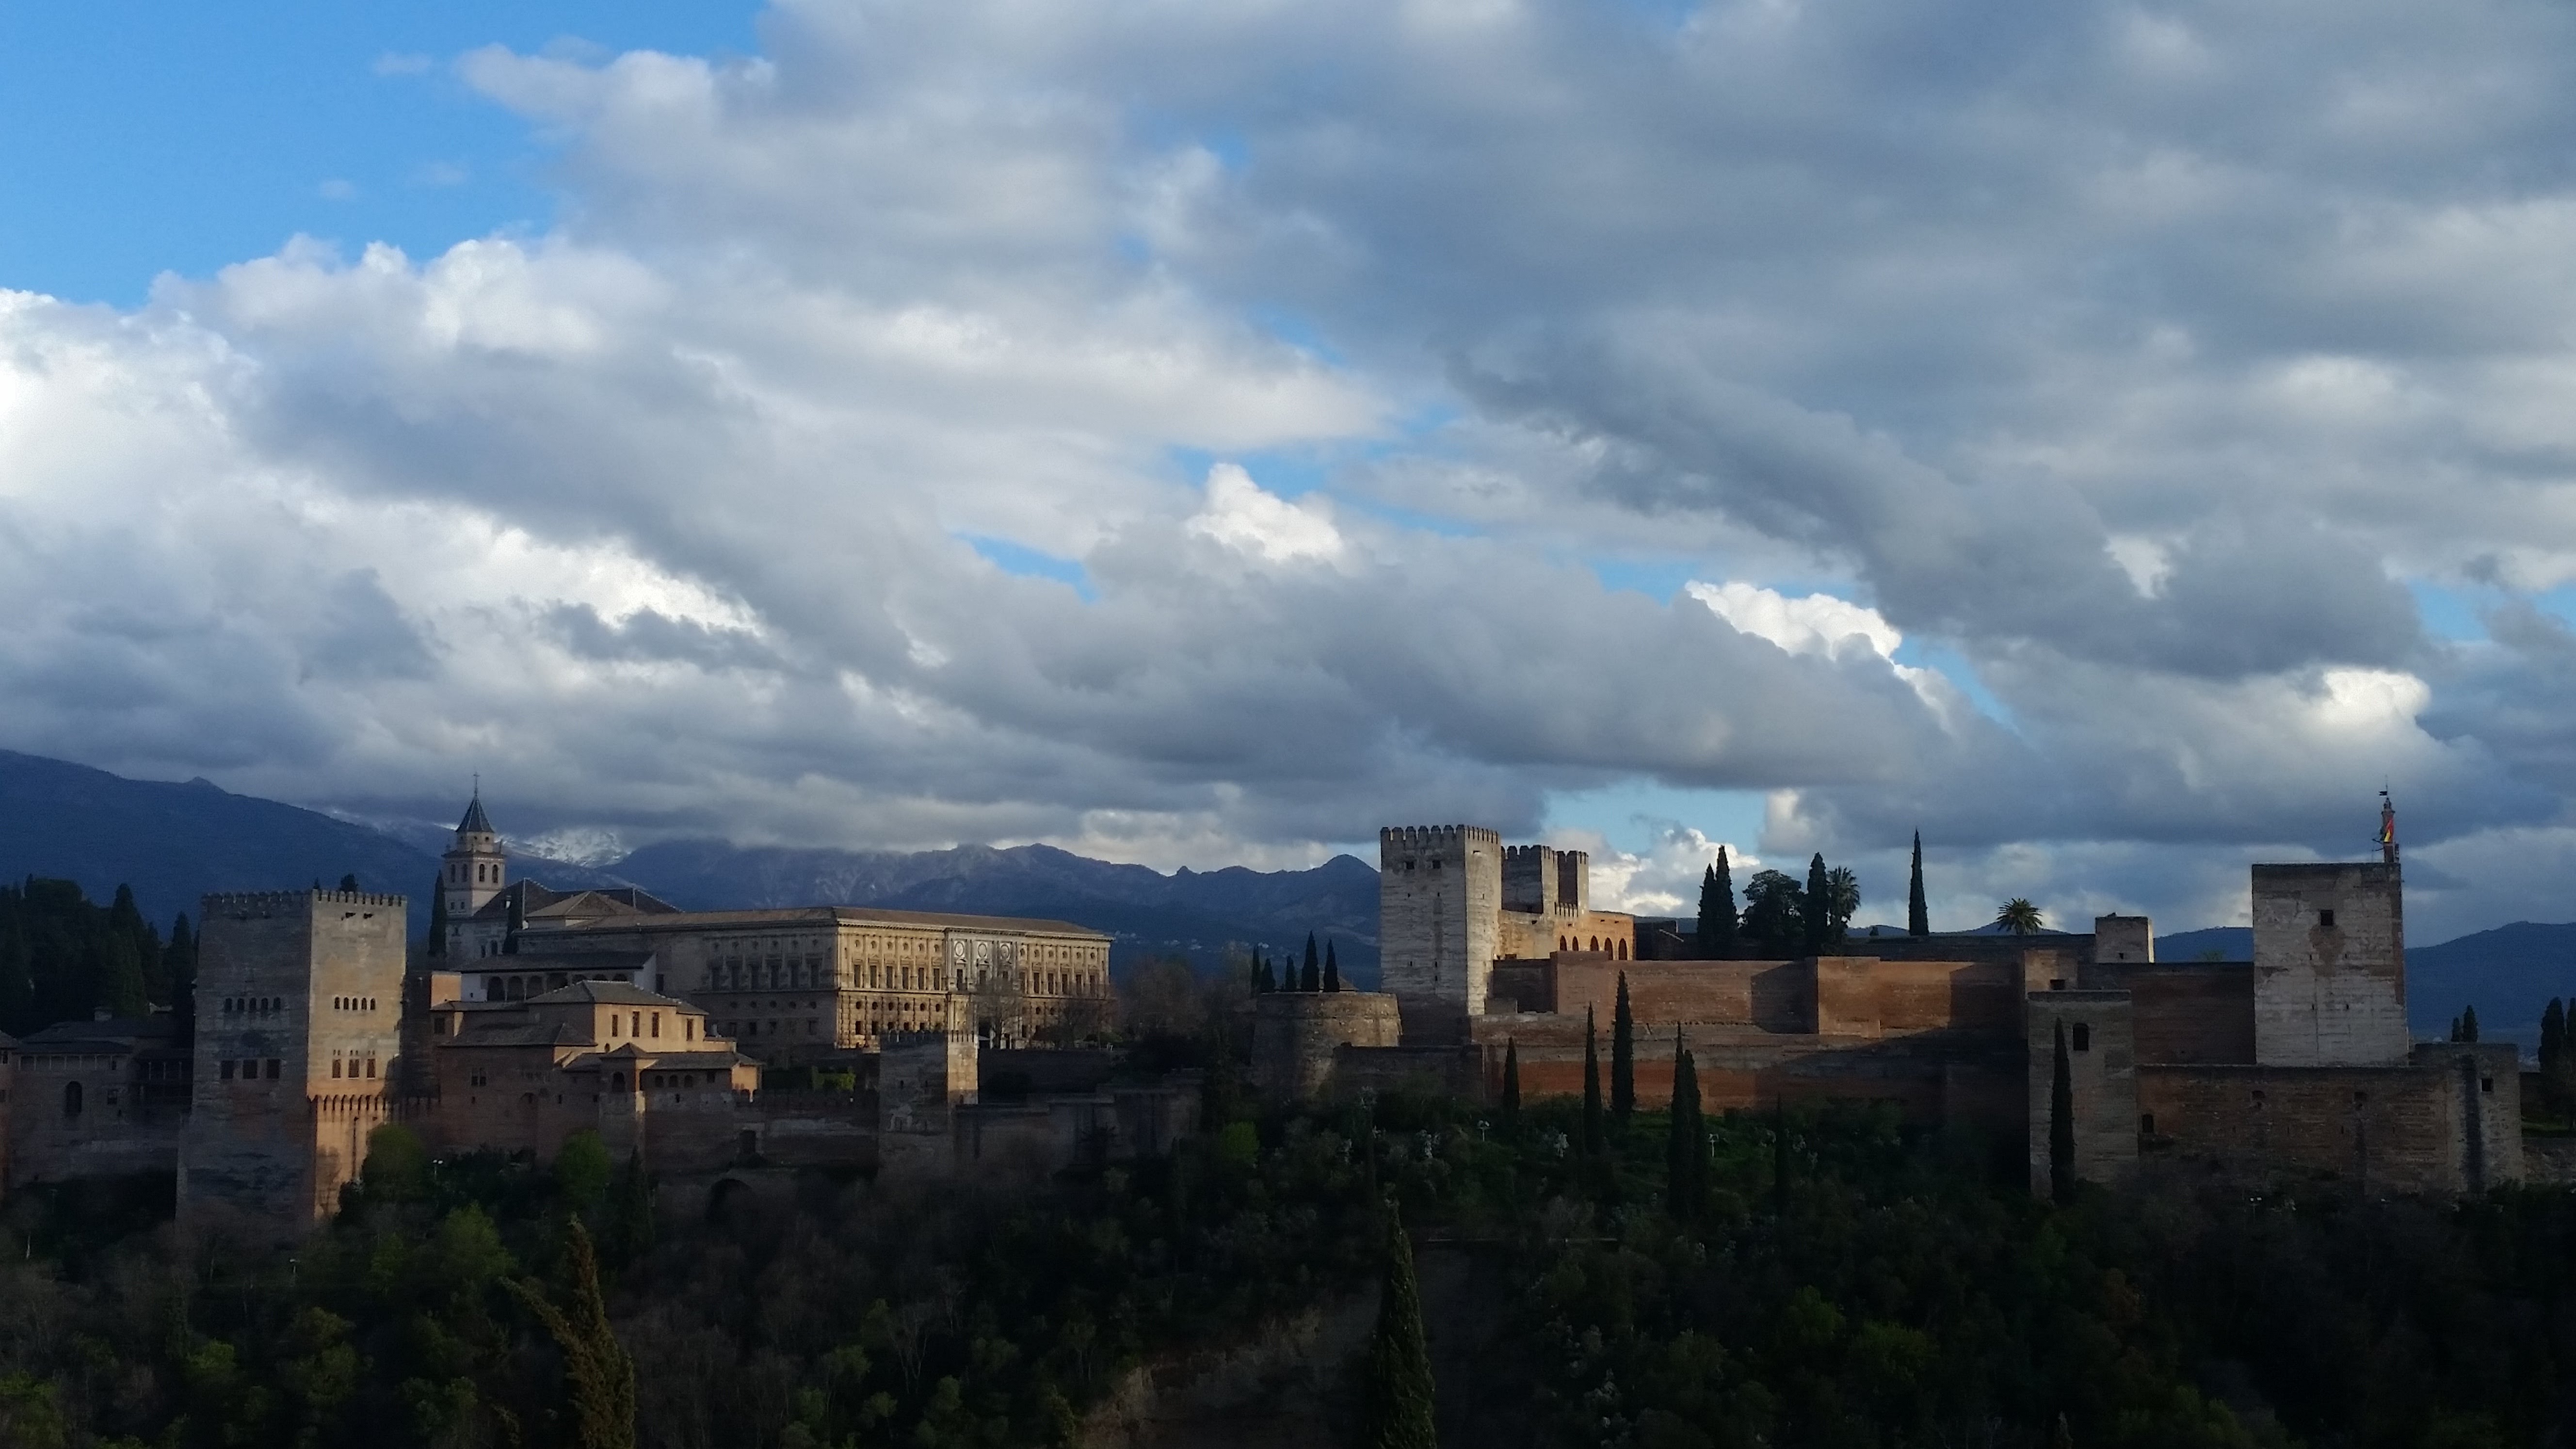 Granada, Malaga and travelling when sick